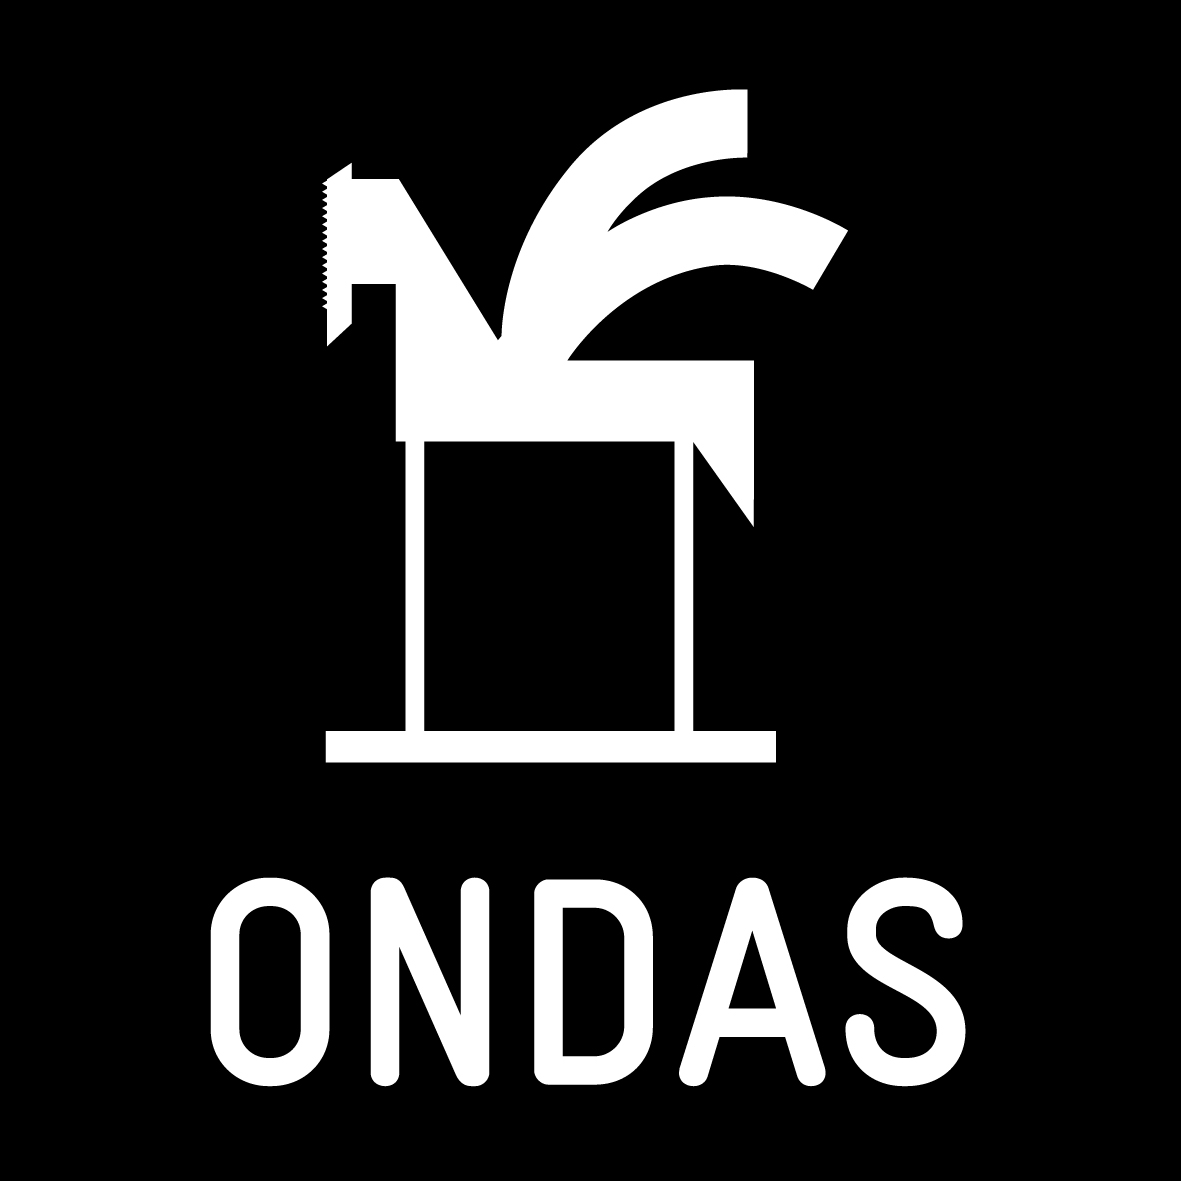 Prix Ondas 2013 : Radio France récompensée